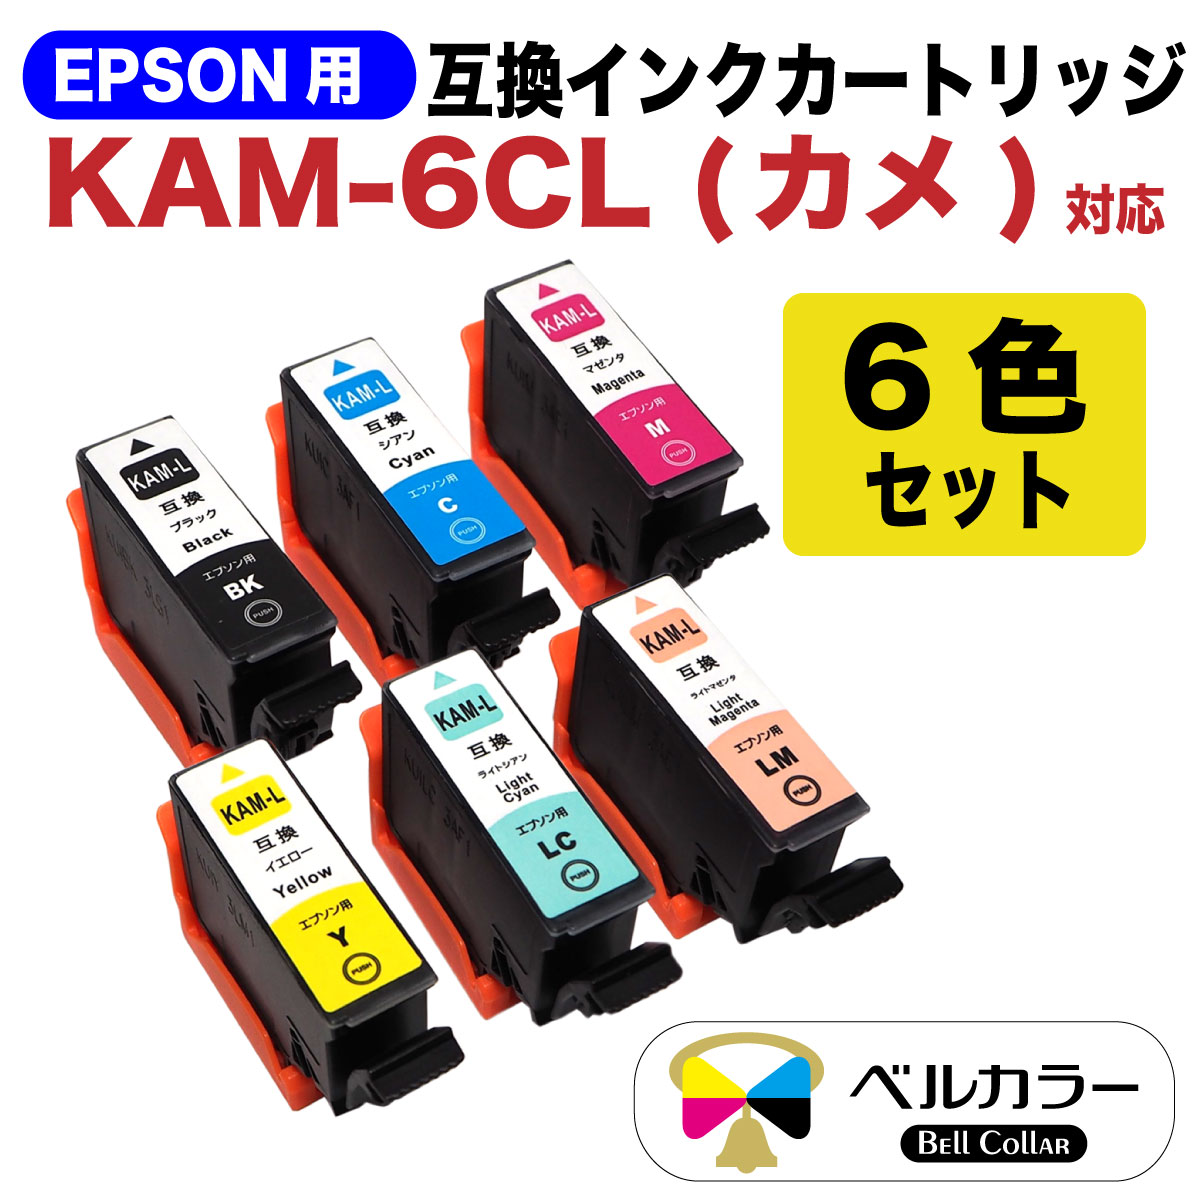 楽天市場 プリンターインク 3年保証 エプソン 互換 Kam 6cl L カメ Ep 1ab Ep 1an Ep 1ar Ep 1aw Ep 8aw Ep 8ab Ep 8ar Ep 8aw Ep 8ab Ep 8ar 対応 互換 インクカートリッジ 6色セット ベルカラー製 互換インクの専門店 ベルカラー